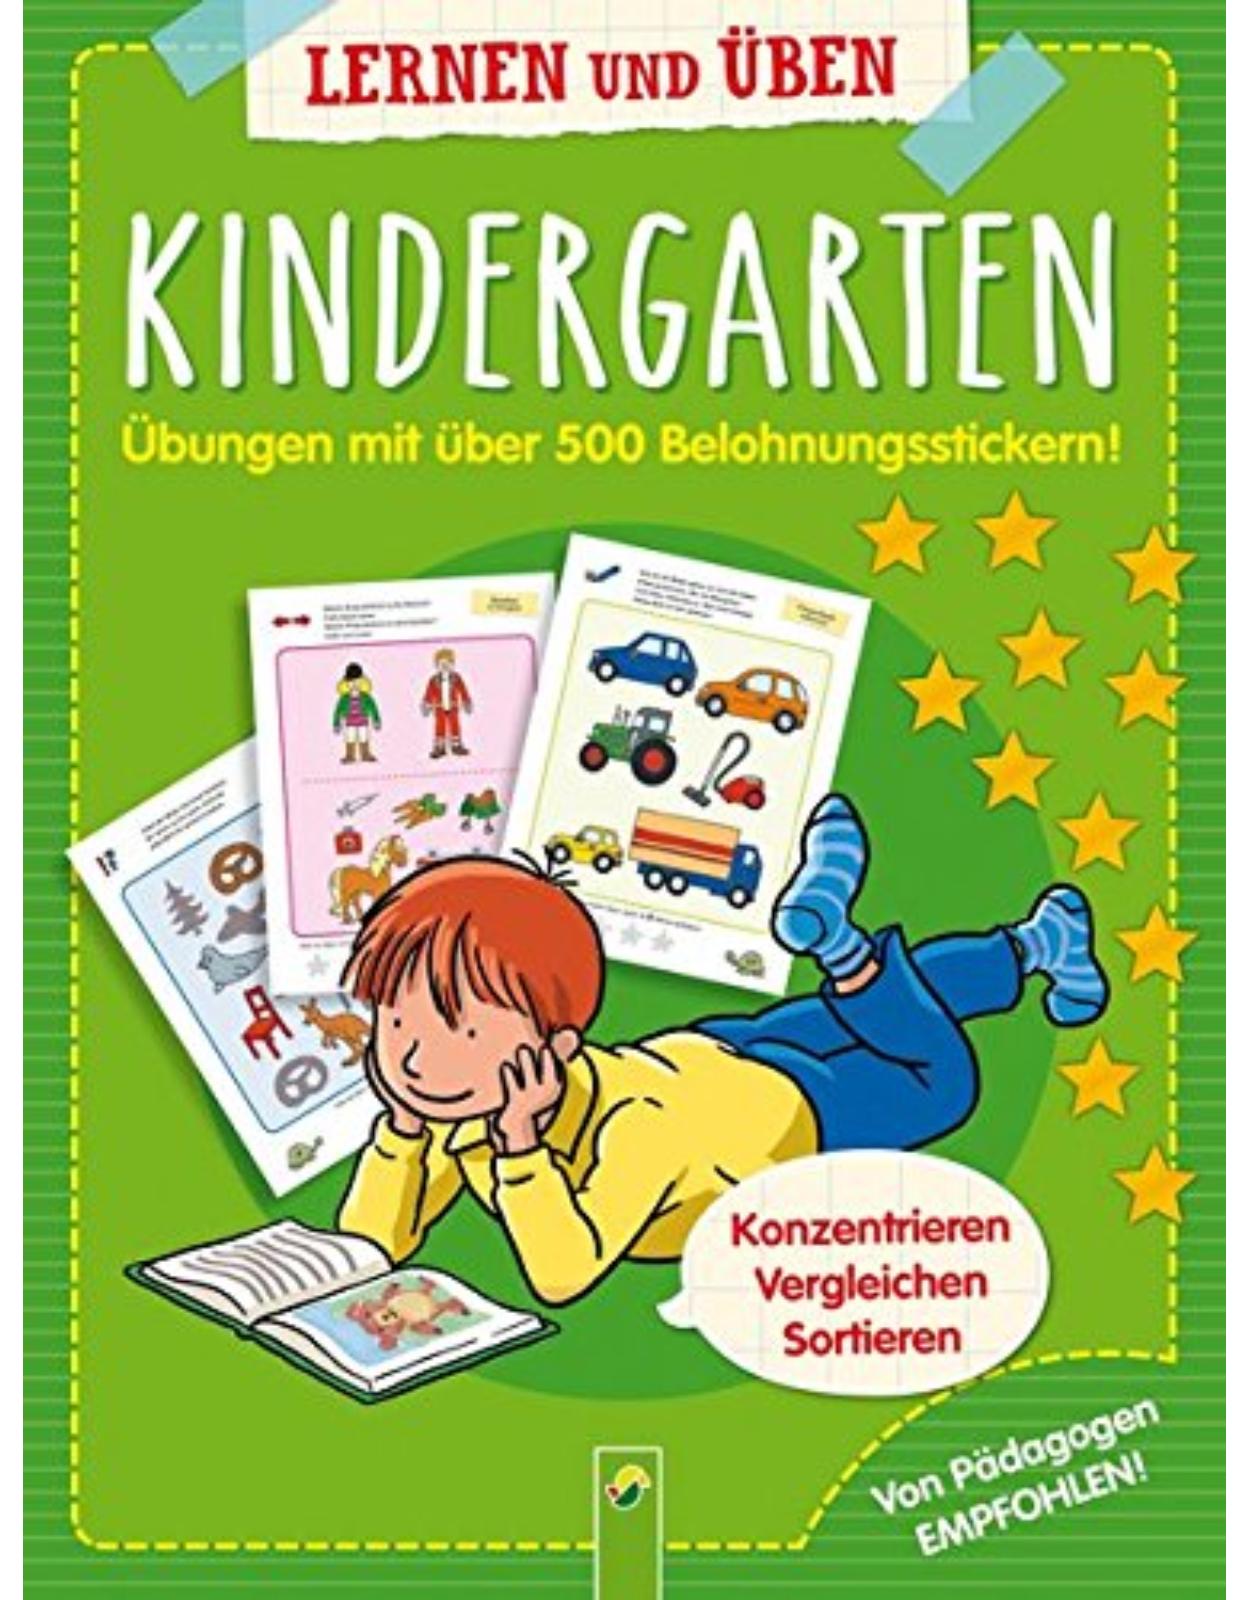 Kindergarten - Übungen mit 500 Belohnungsstickern: Konzentrieren, vergleichen, sortieren. Von Pädagogen empfohlen